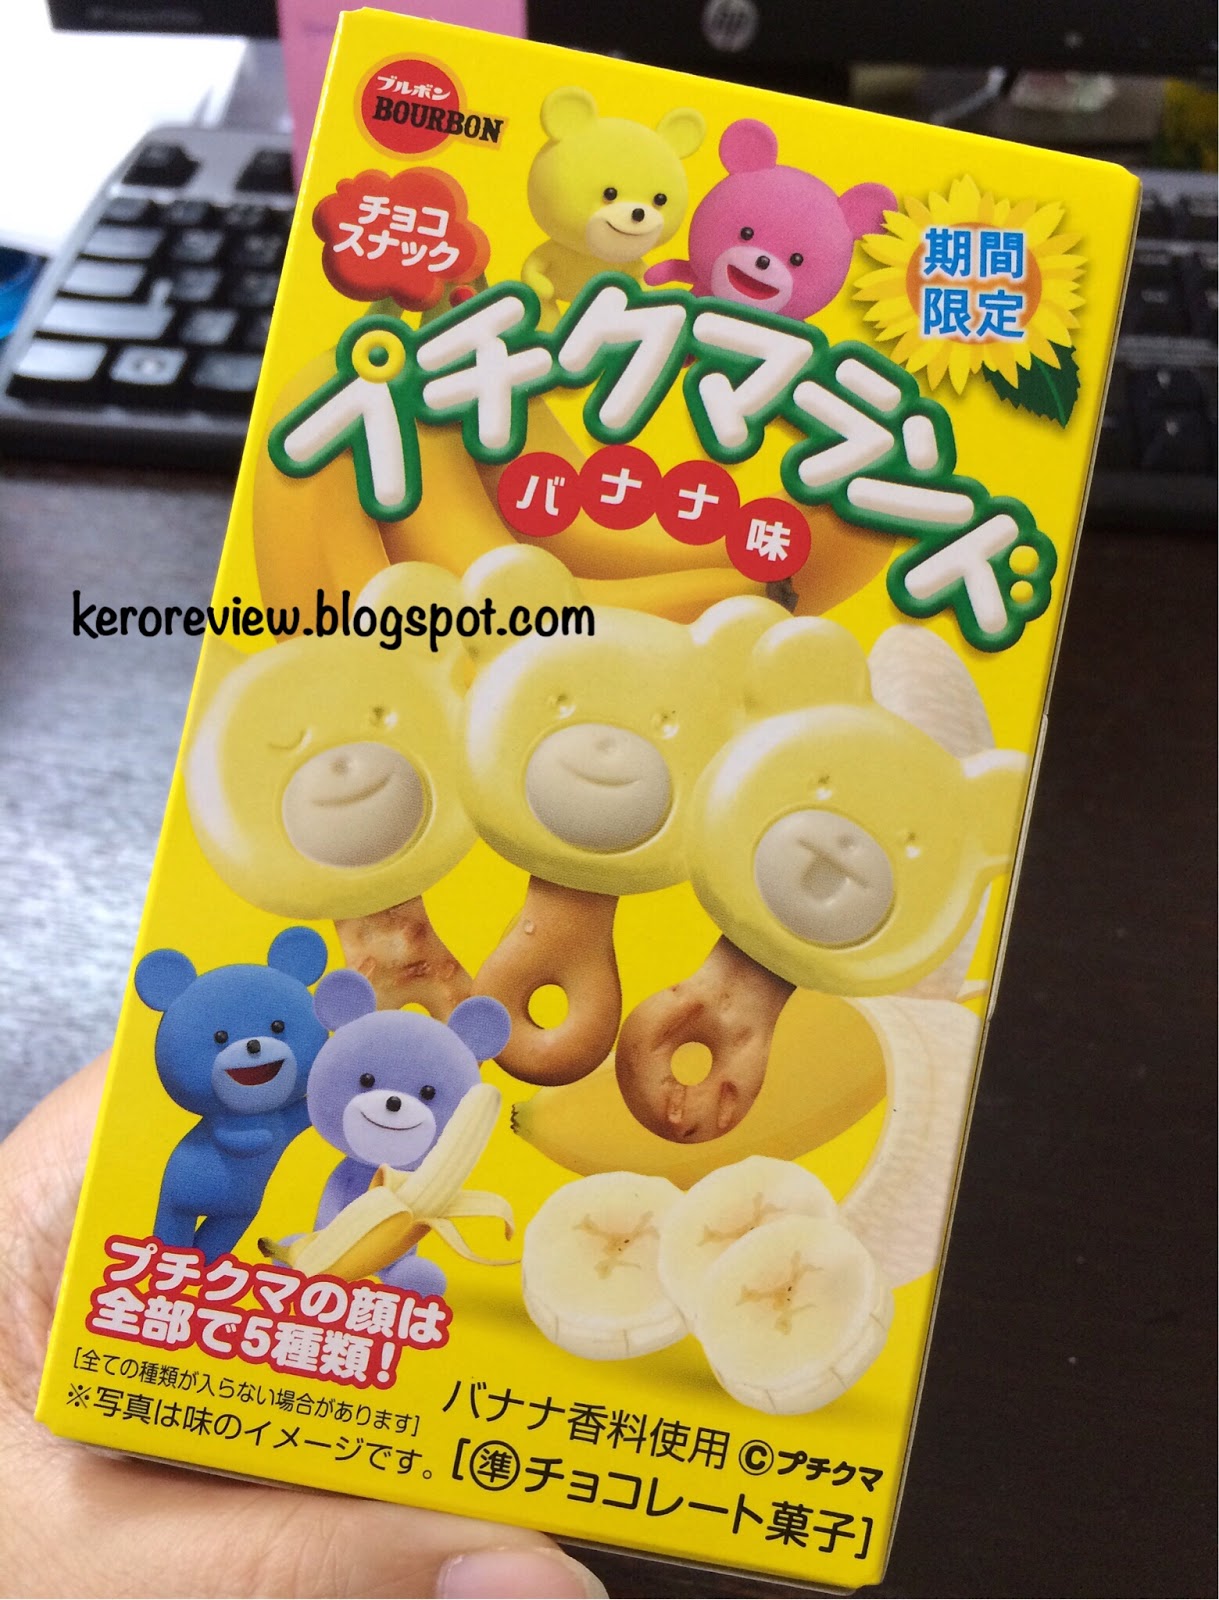 รีวิว เบอร์บอน บิสกิตรูปหมี รสช็อกโกแลตและกล้วย จำนวนจำกัด (CR) Review Limited Edition Japan Bear Banana Flavored Chocolate Biscuits, Bourbon Brand.